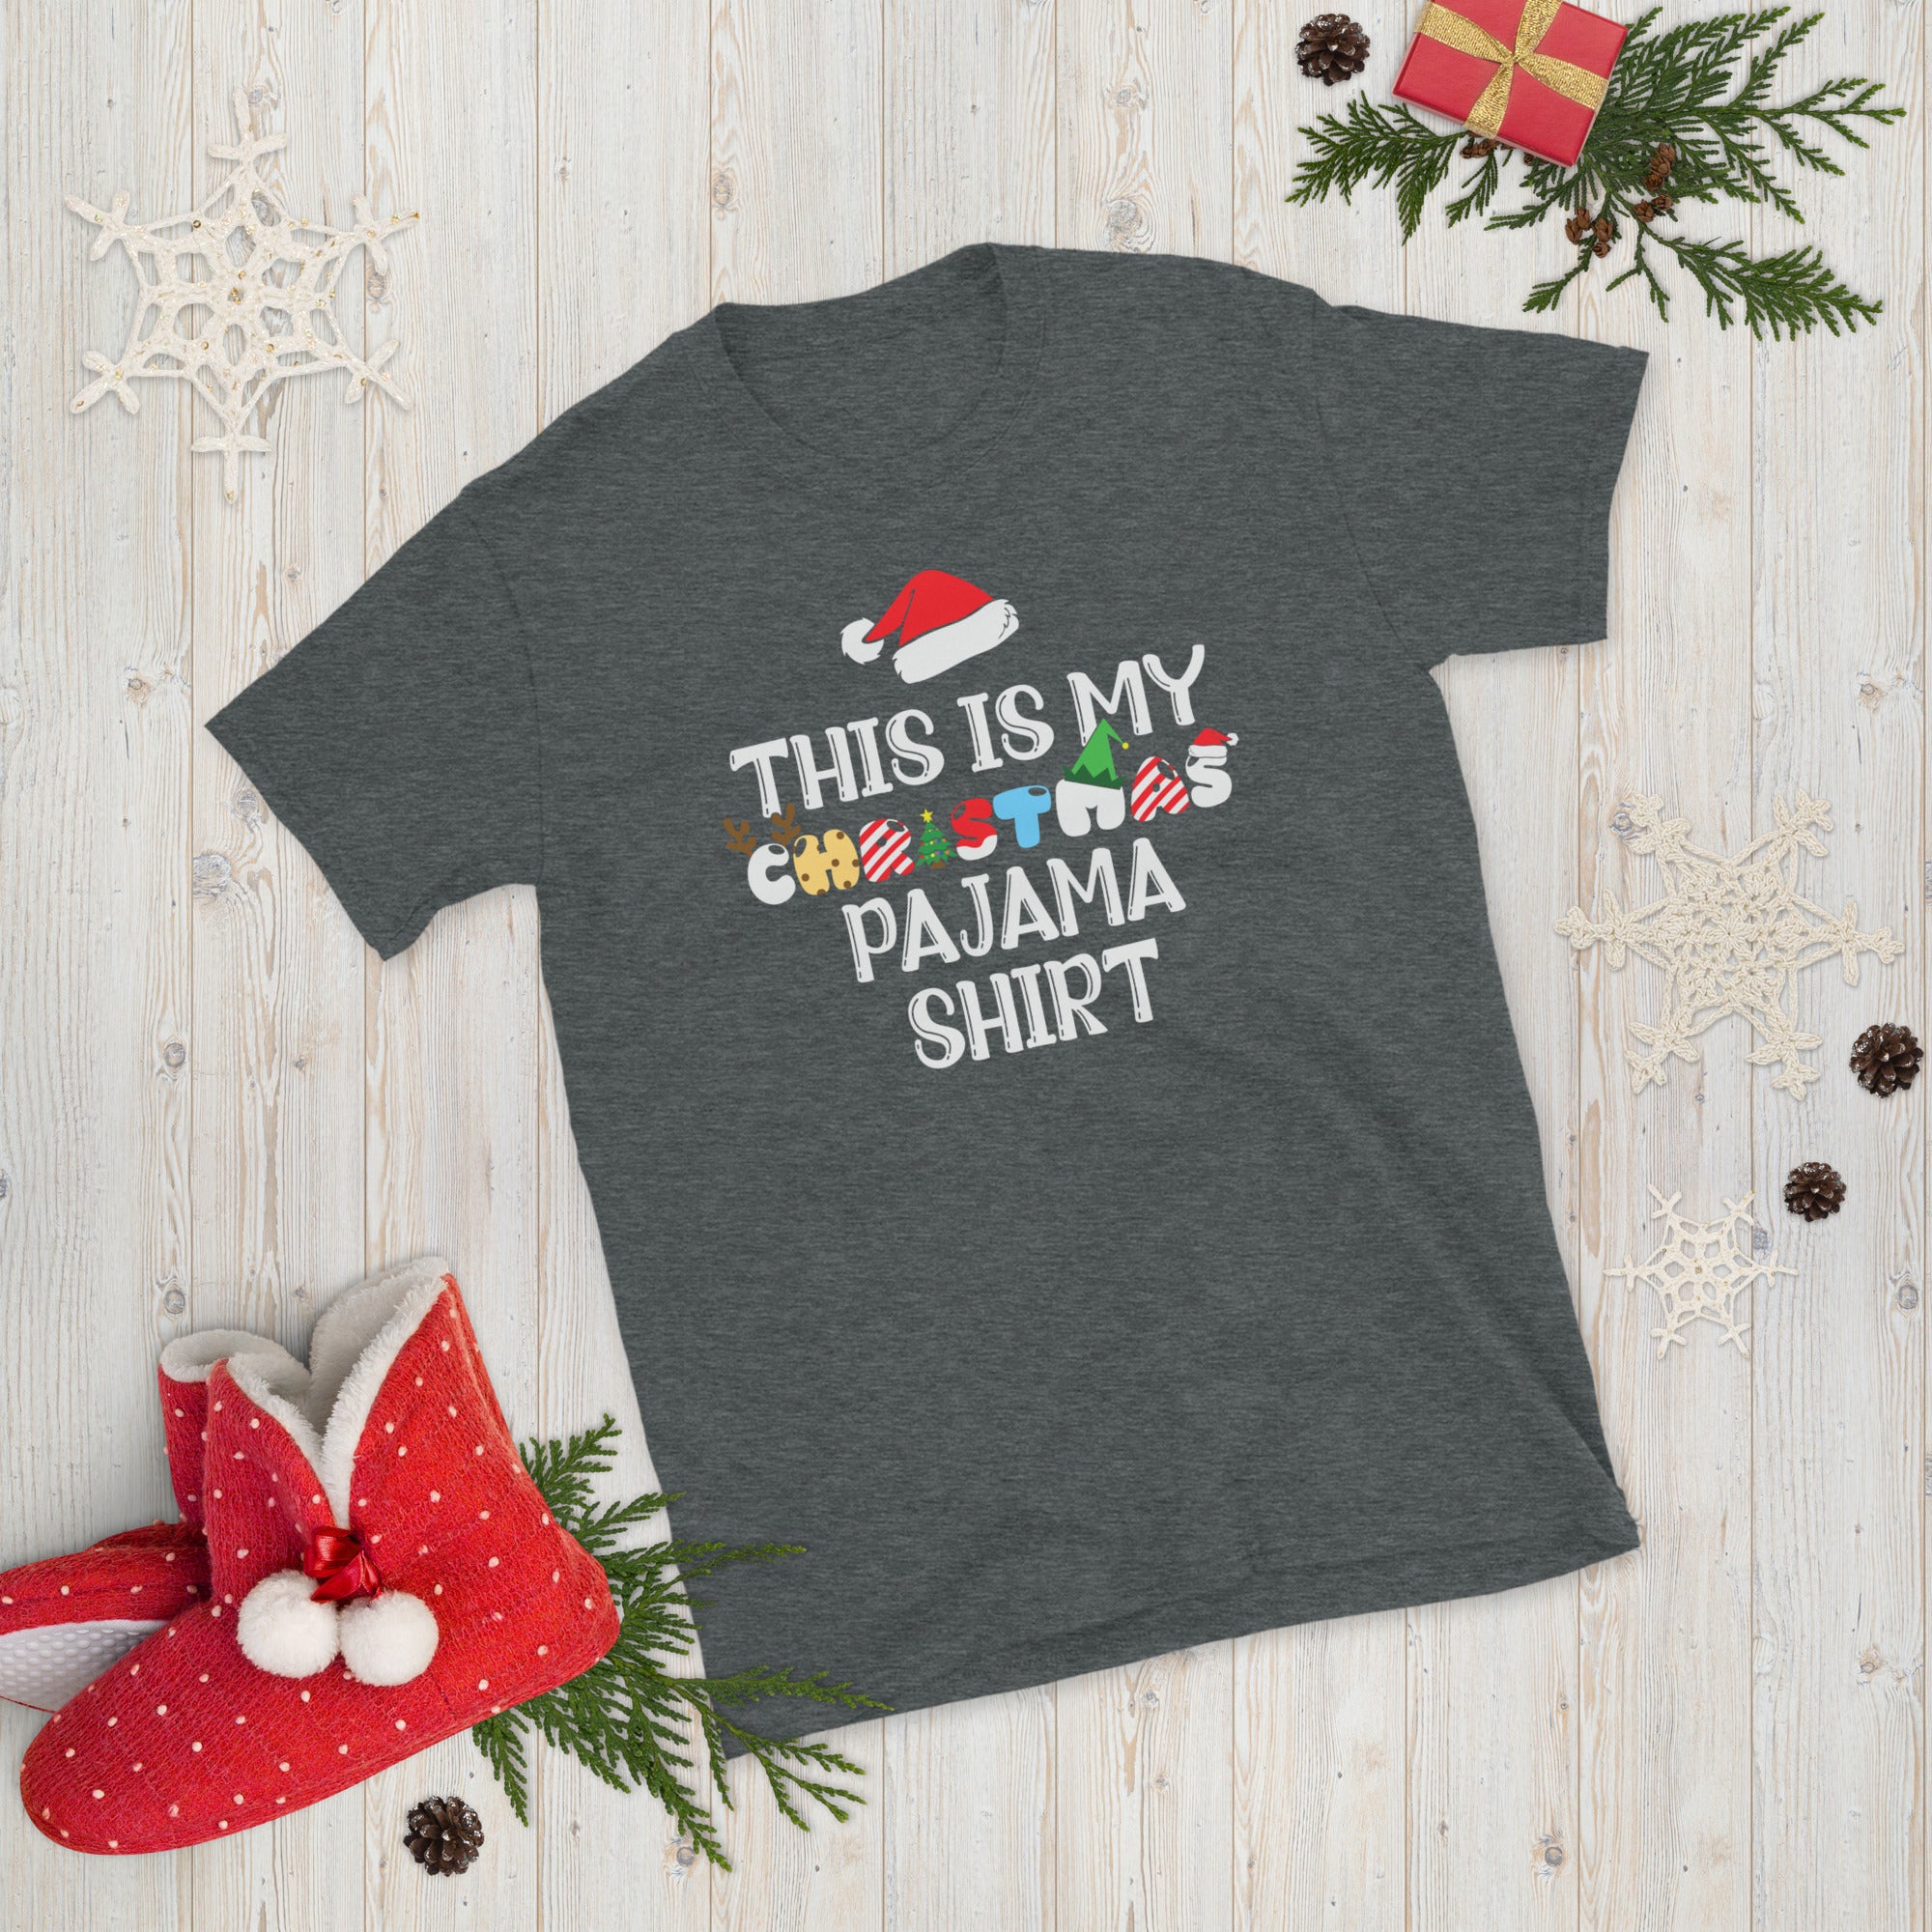 This Is My Christmas Pajama Shirt, Christmas Matching Shirt, Funny Christmas Shirt, Married Pajamas, Family Christmas Shirts - Madeinsea©